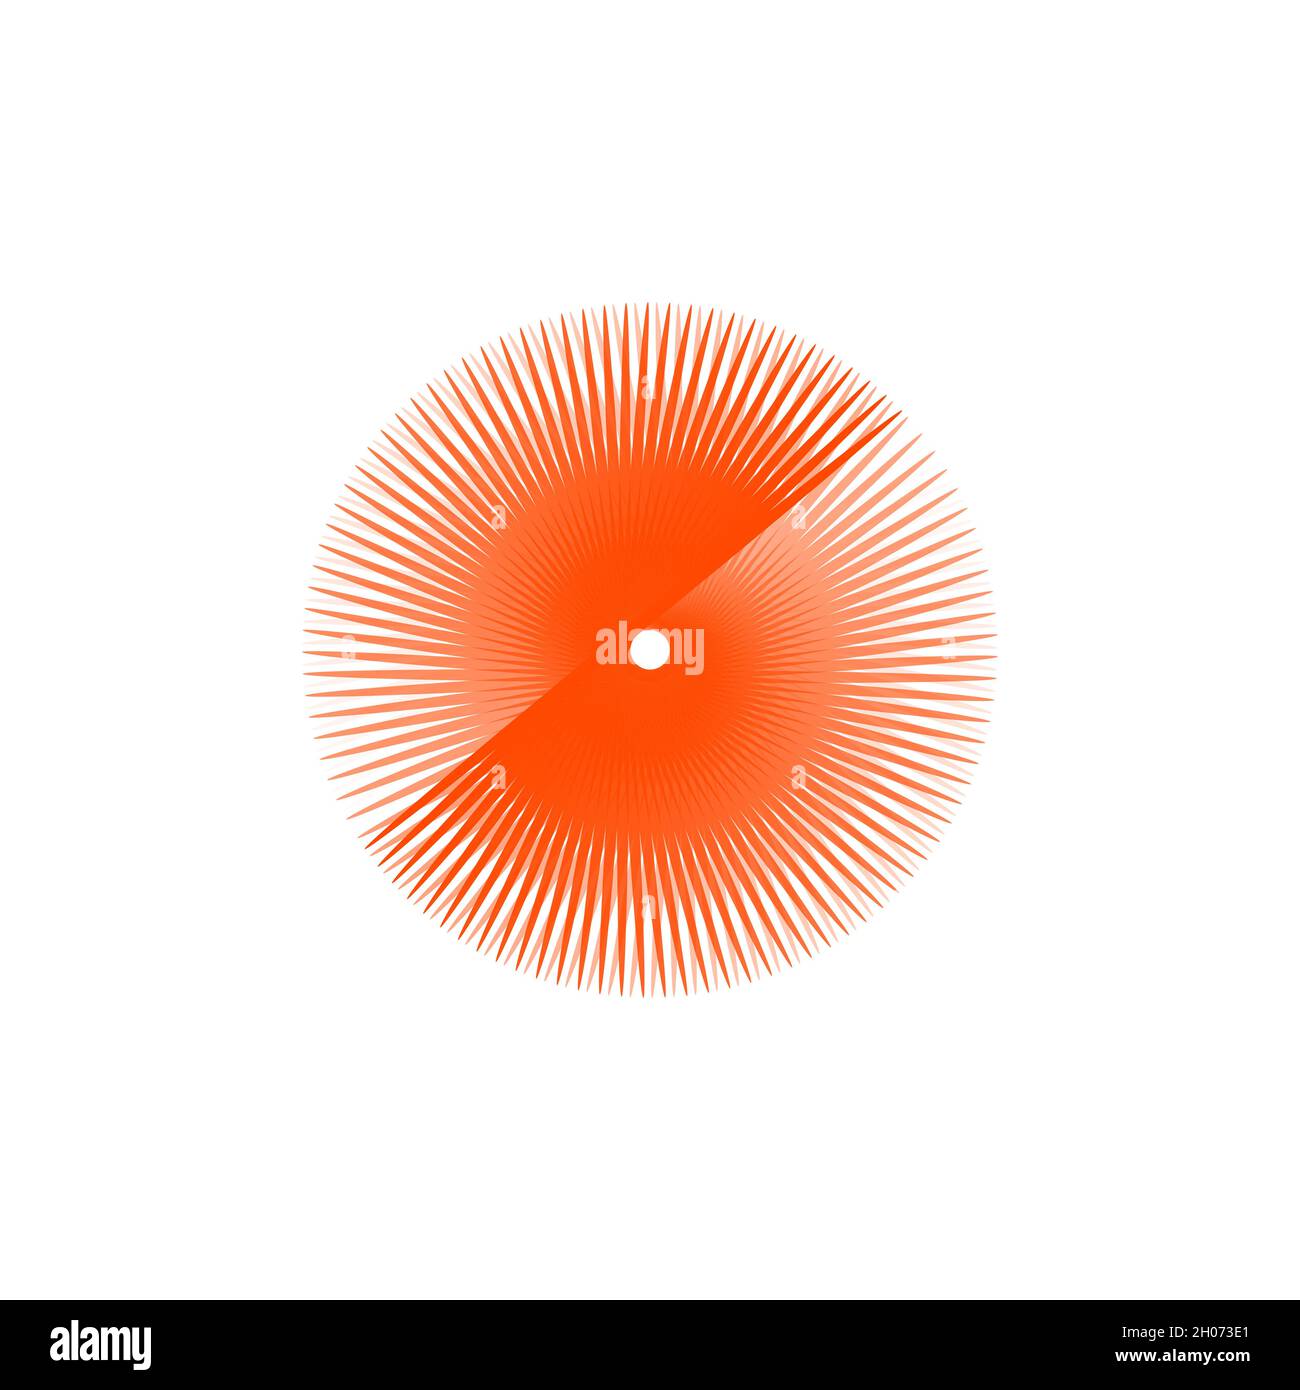 Kreative Vektordarstellung von geometrischen Sonnenstrahlen. Stock Vektorgrafik isoliert auf weißem Hintergrund. Stock Vektor